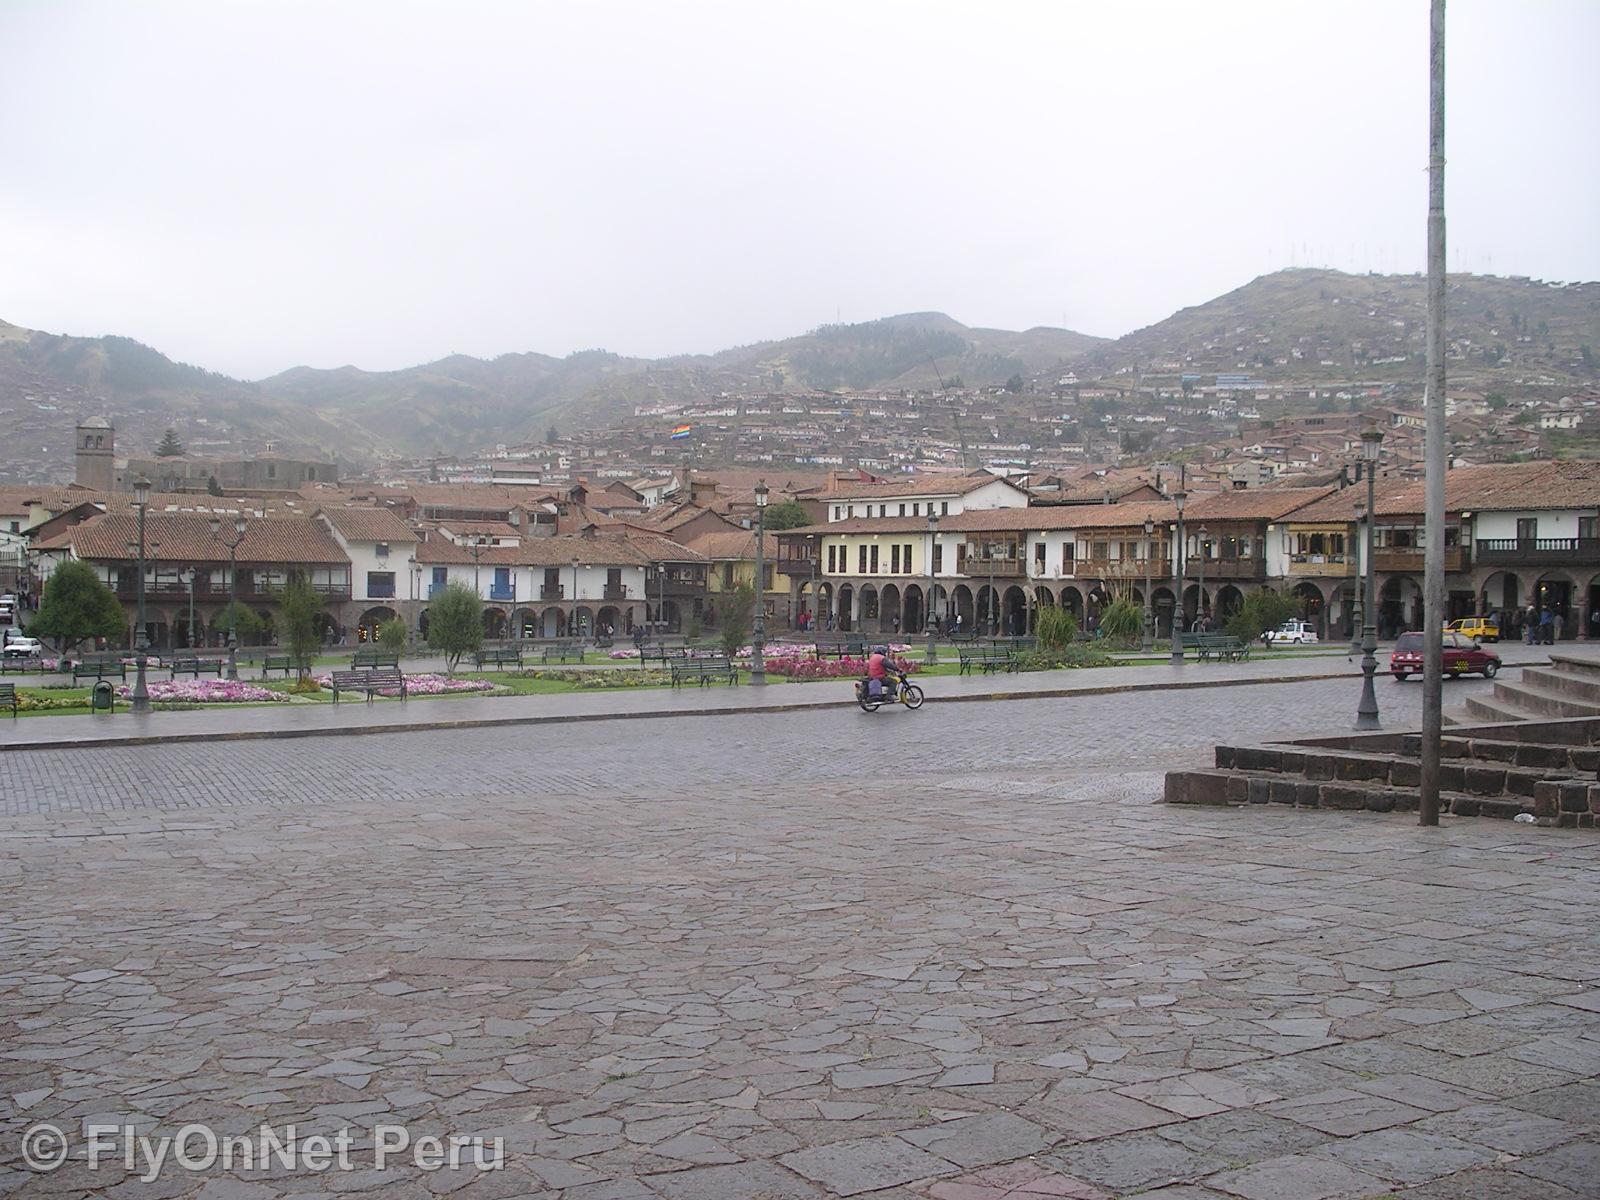 Photo Album: Main Place of Cusco